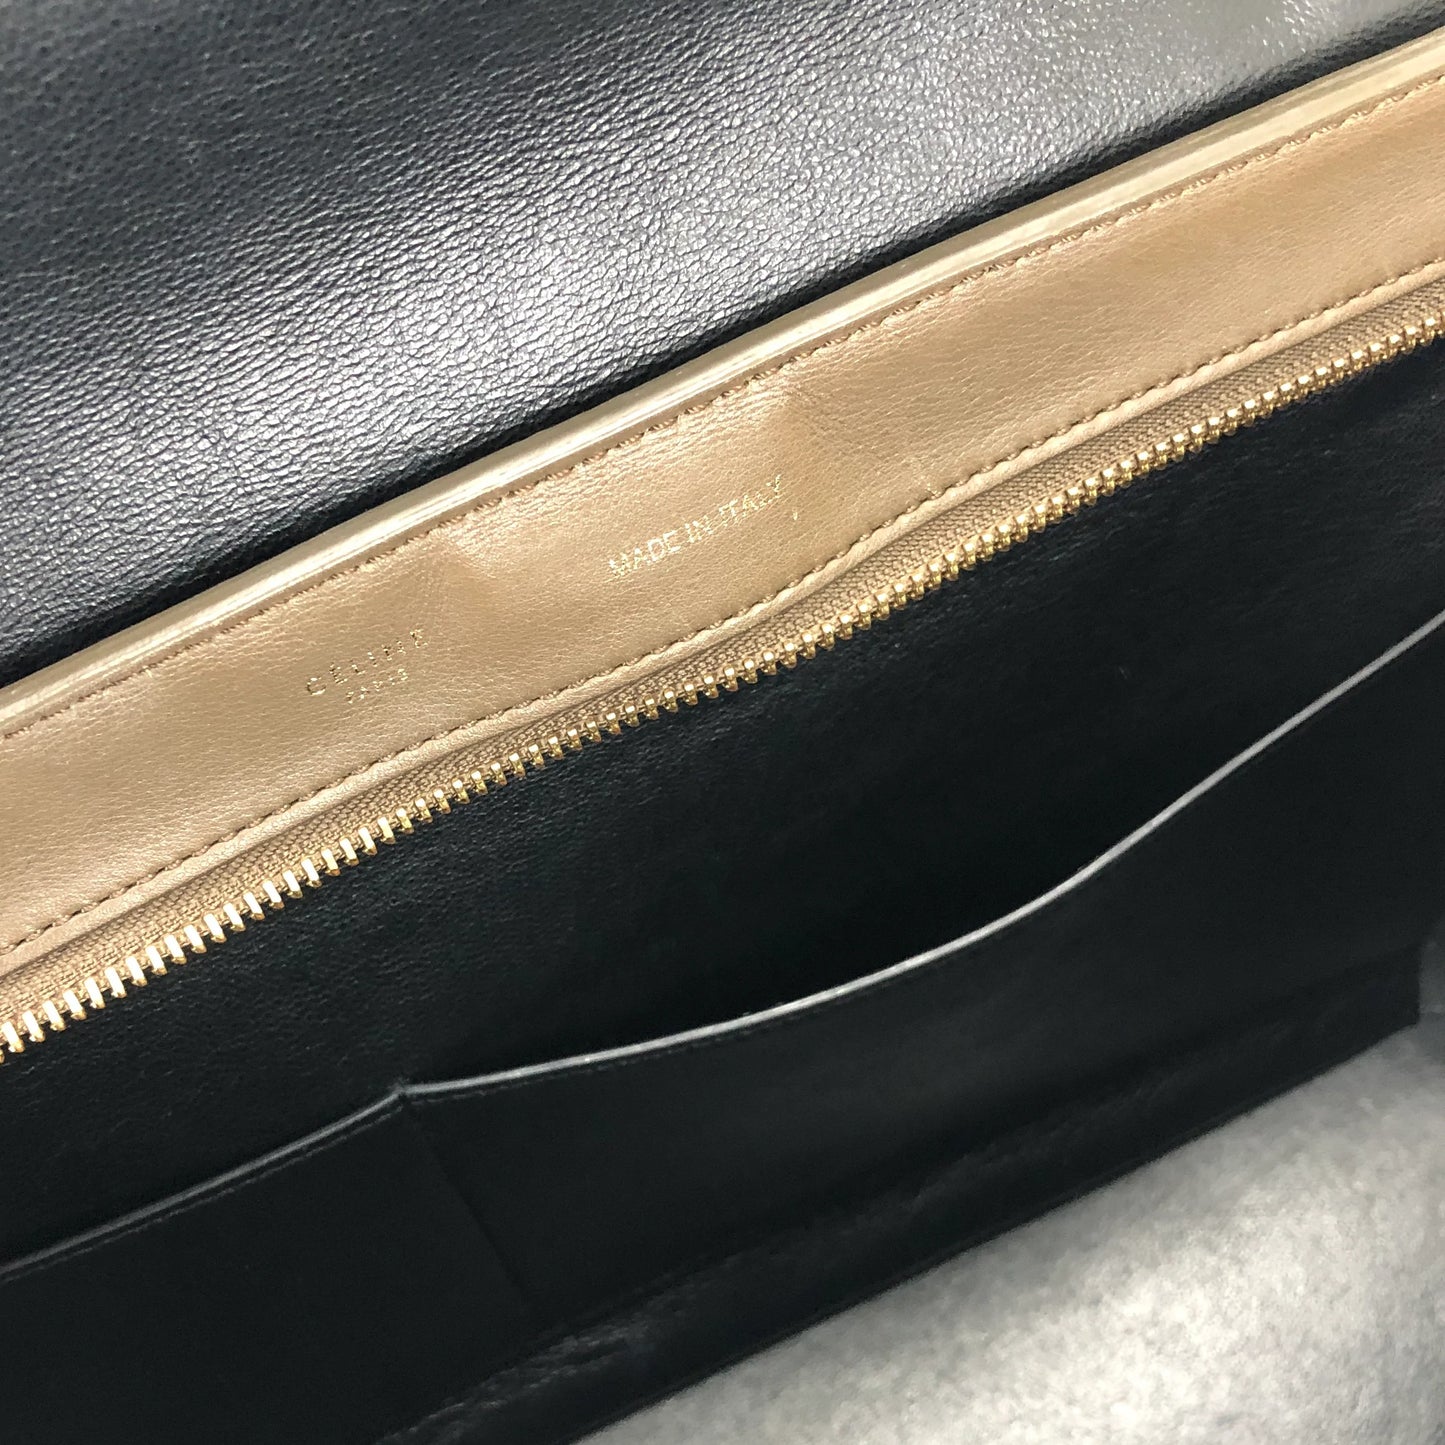 CELINE 2WAY leather shoulder bag black khaki black old Celine  ukbr8v